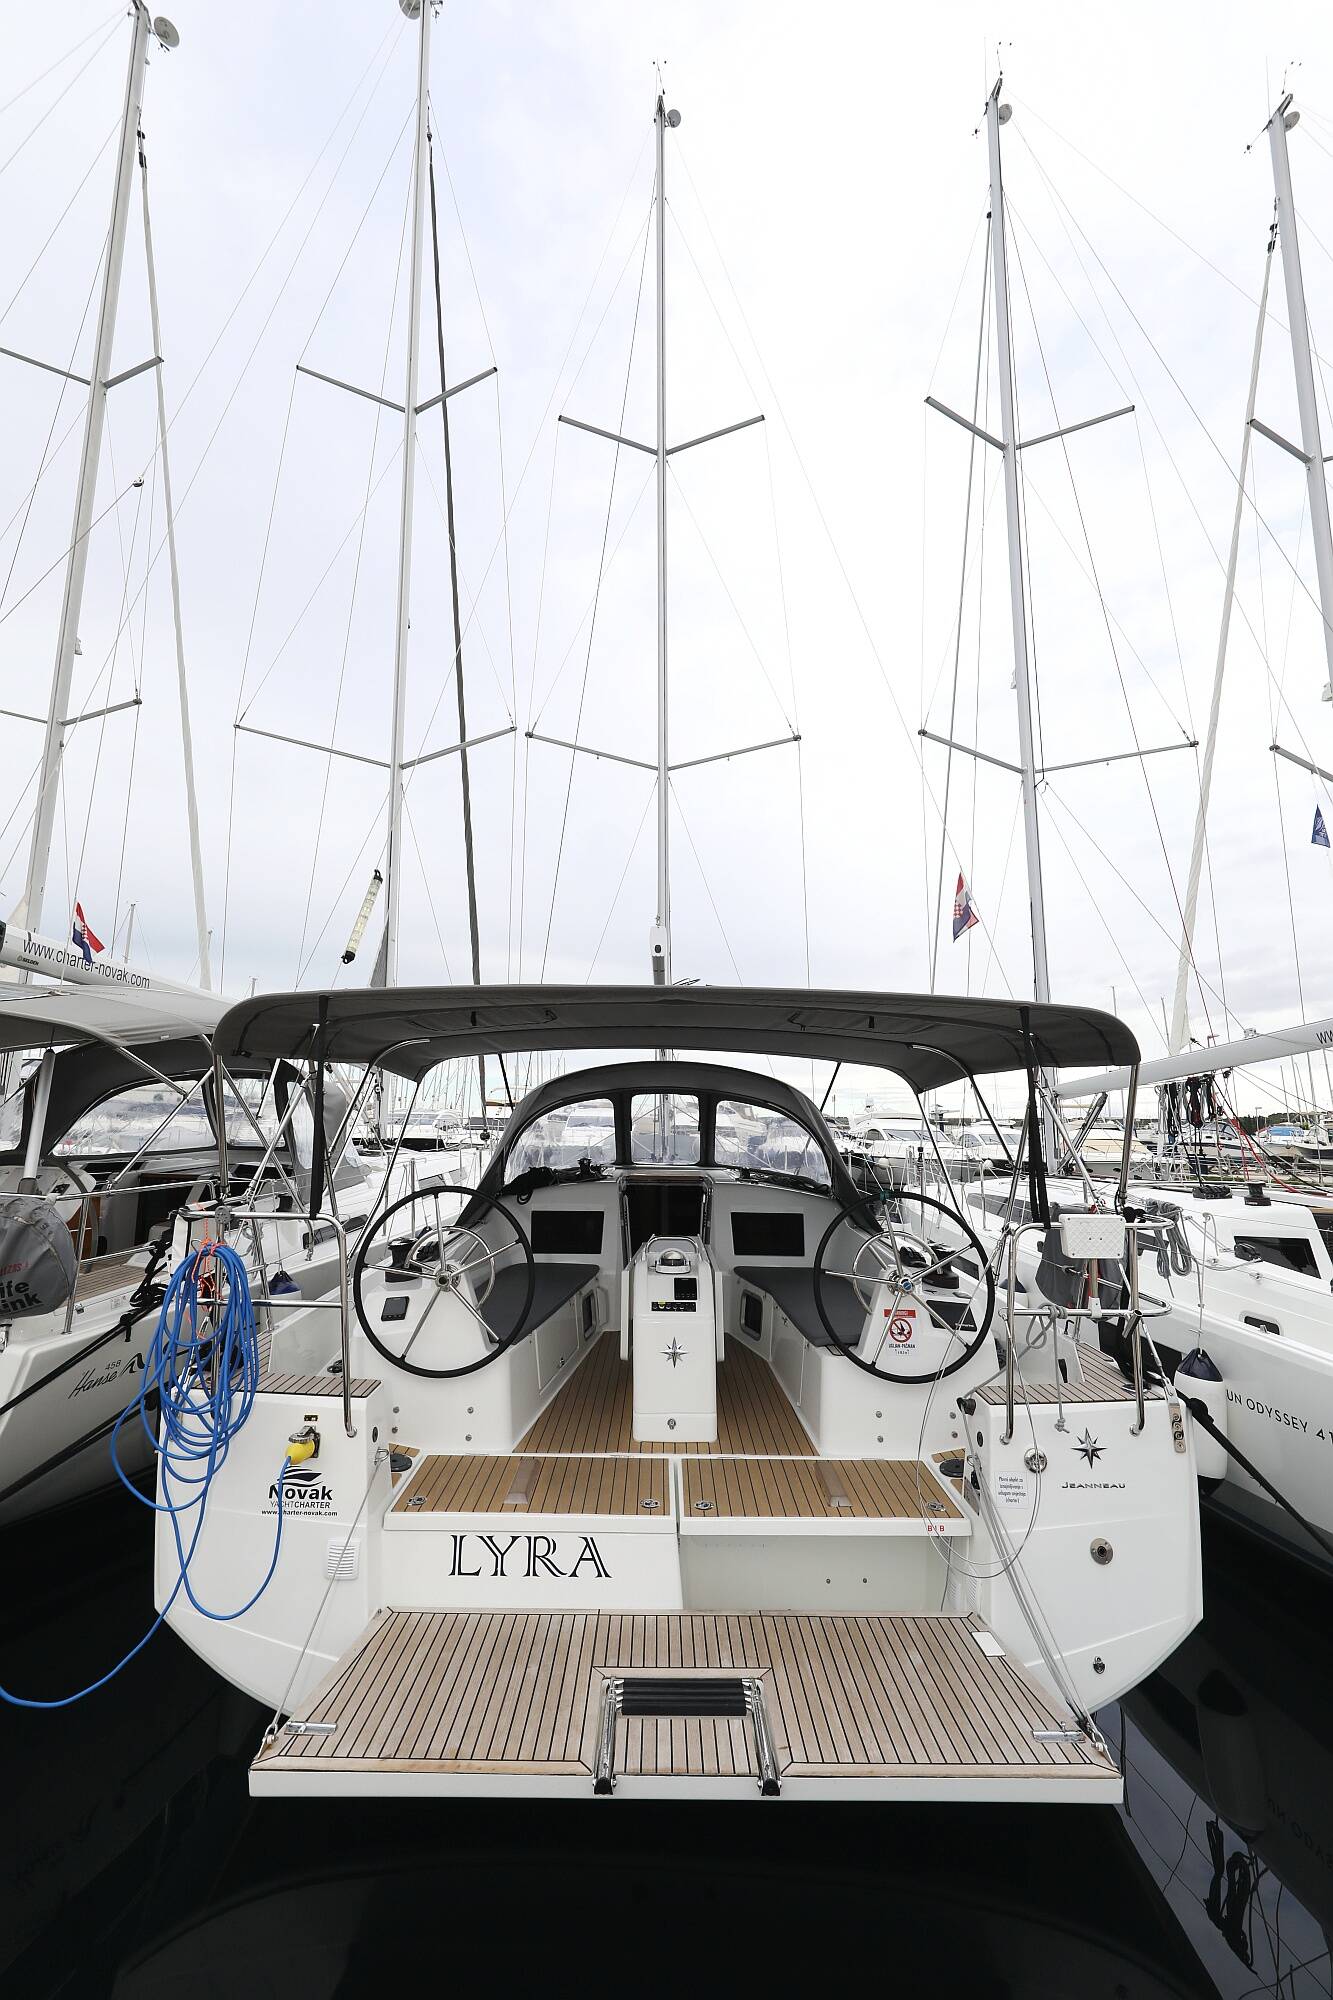 Sun Odyssey 410 Lyra